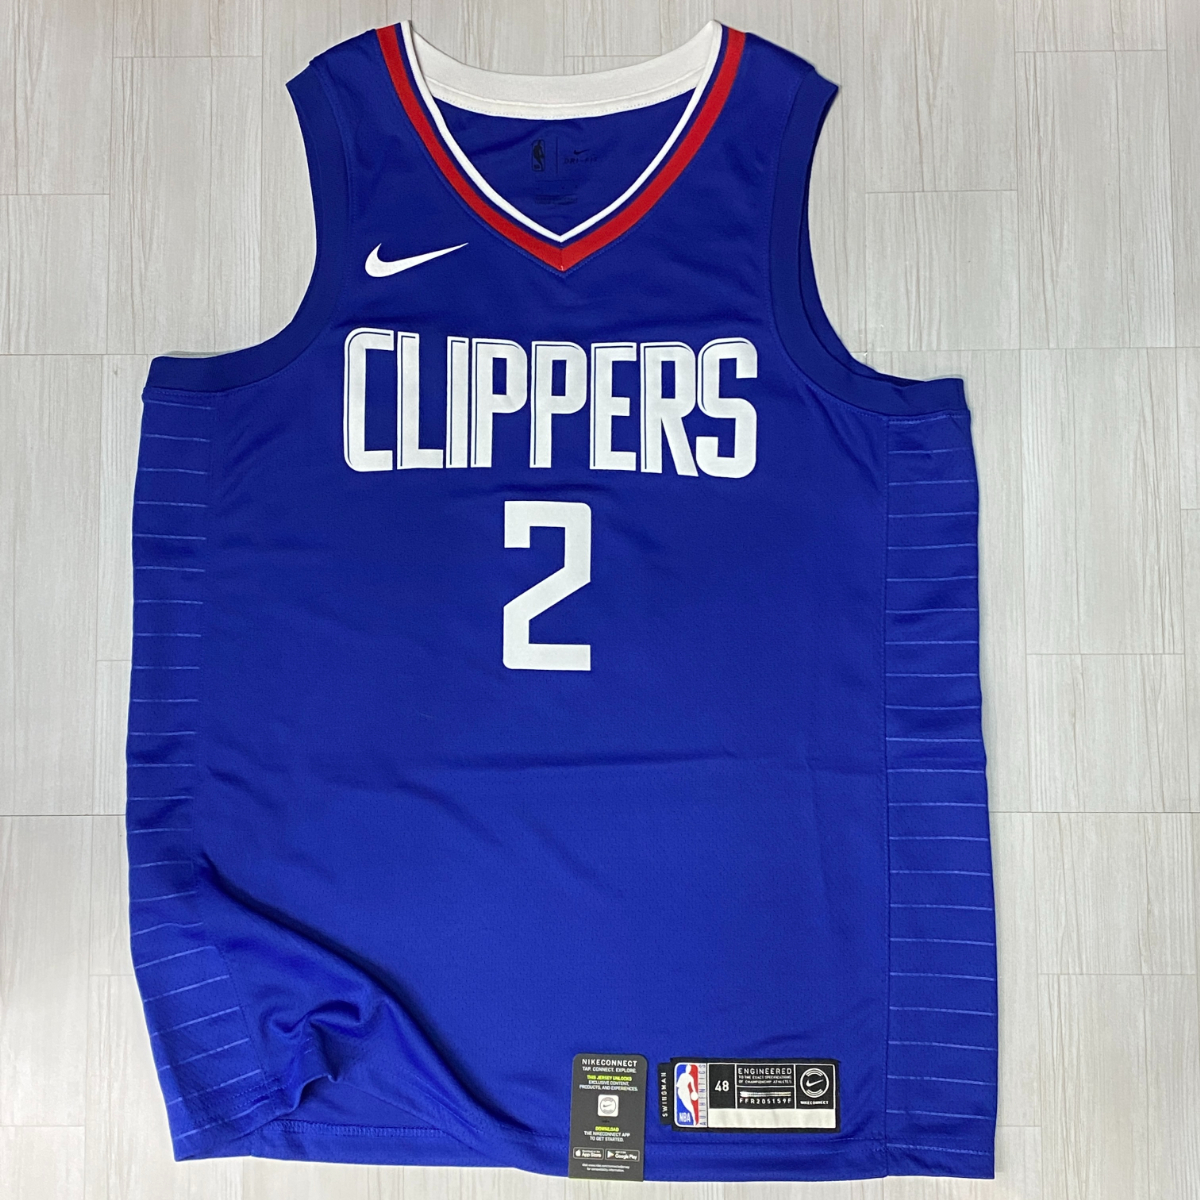 人気提案 【L】 USA正規品 NIKE ロイヤルブルー バスケシャツ オーセンティック #2 Leonard レナード カワイ Clippers LA クリッパーズ NBA ナイキ Lサイズ